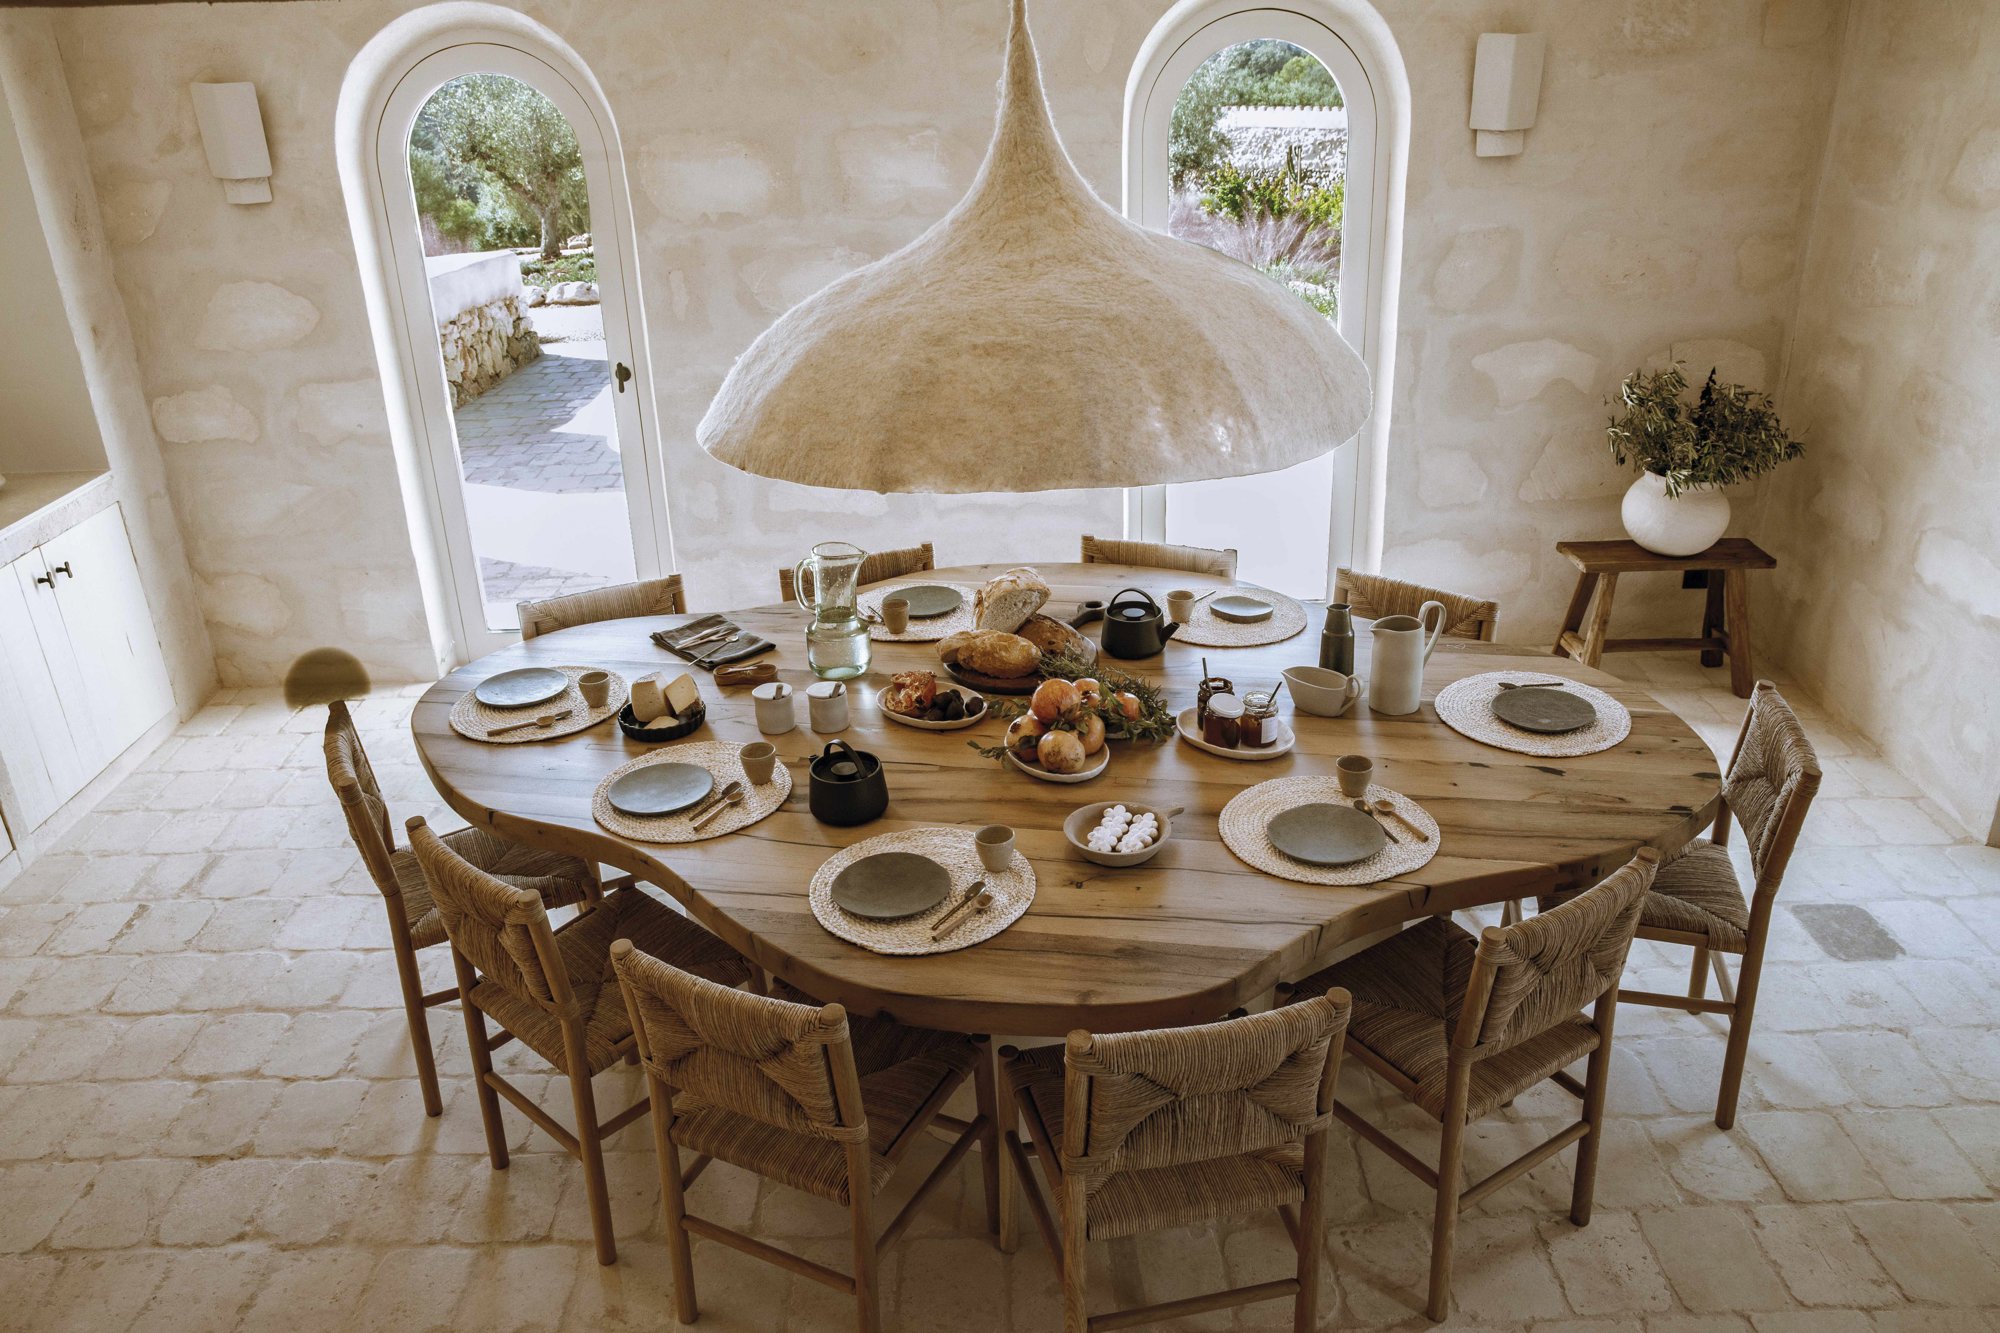 En el comedor de desayunos, mesa hecha a medida por Gavila Carpintería y lámpara de Van Vilt. Toda la vajilla ha sido realizada por el ceramista local Isaac Femenías Ferrá